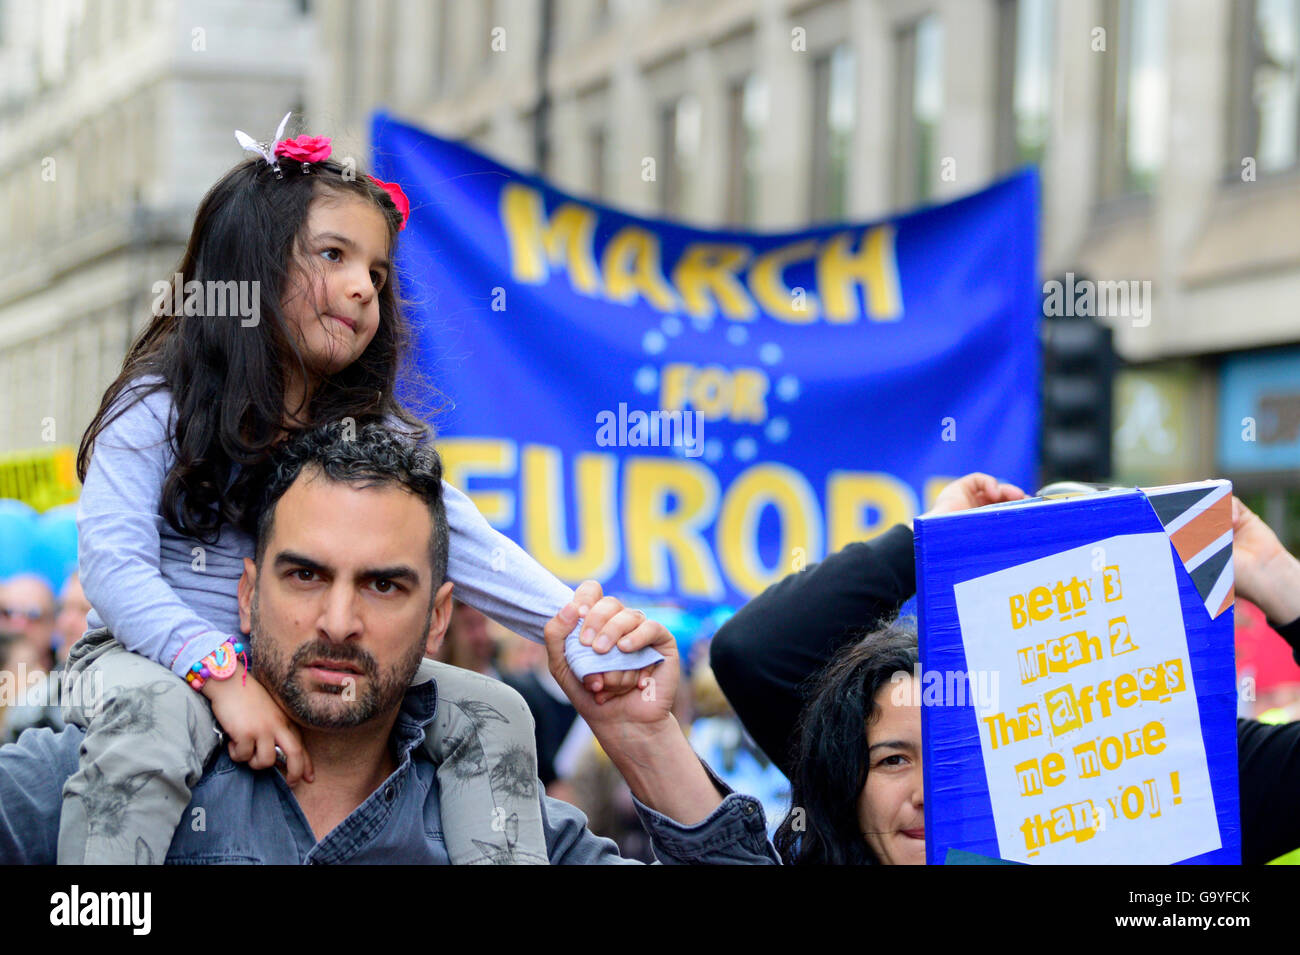 Londra, Regno Unito. 2 Luglio, 2016. Una stima di 30.000 persone si uniscono alla marzo per l'Europa da Park Lane per la piazza del Parlamento per protestare contro Brexit. Credito: PjrNews/Alamy Live News Foto Stock